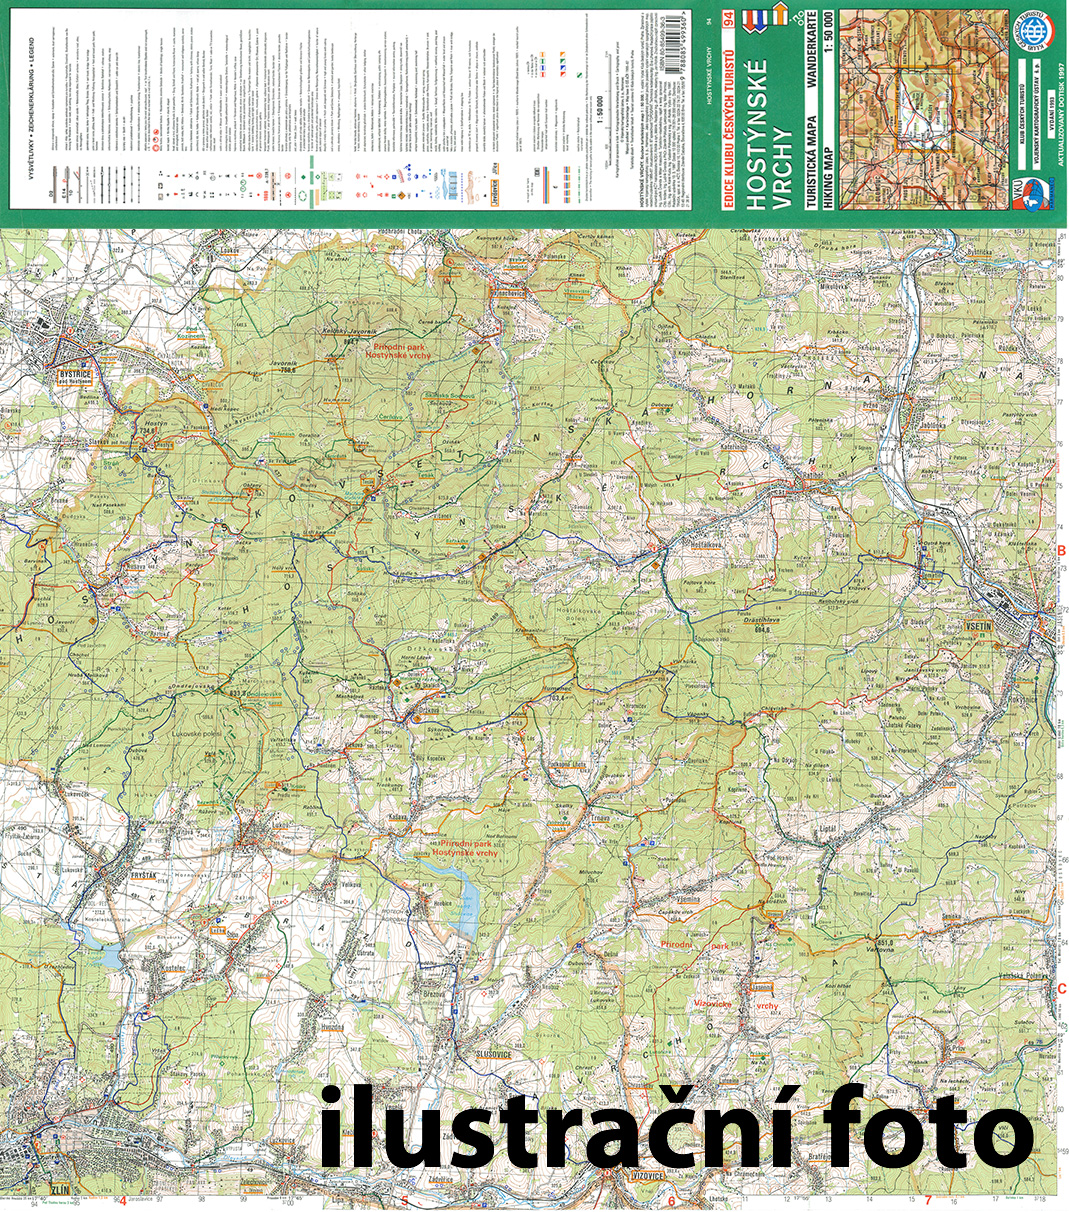 Nástěnná mapa Pošumaví – Prachaticko - turistická (70)